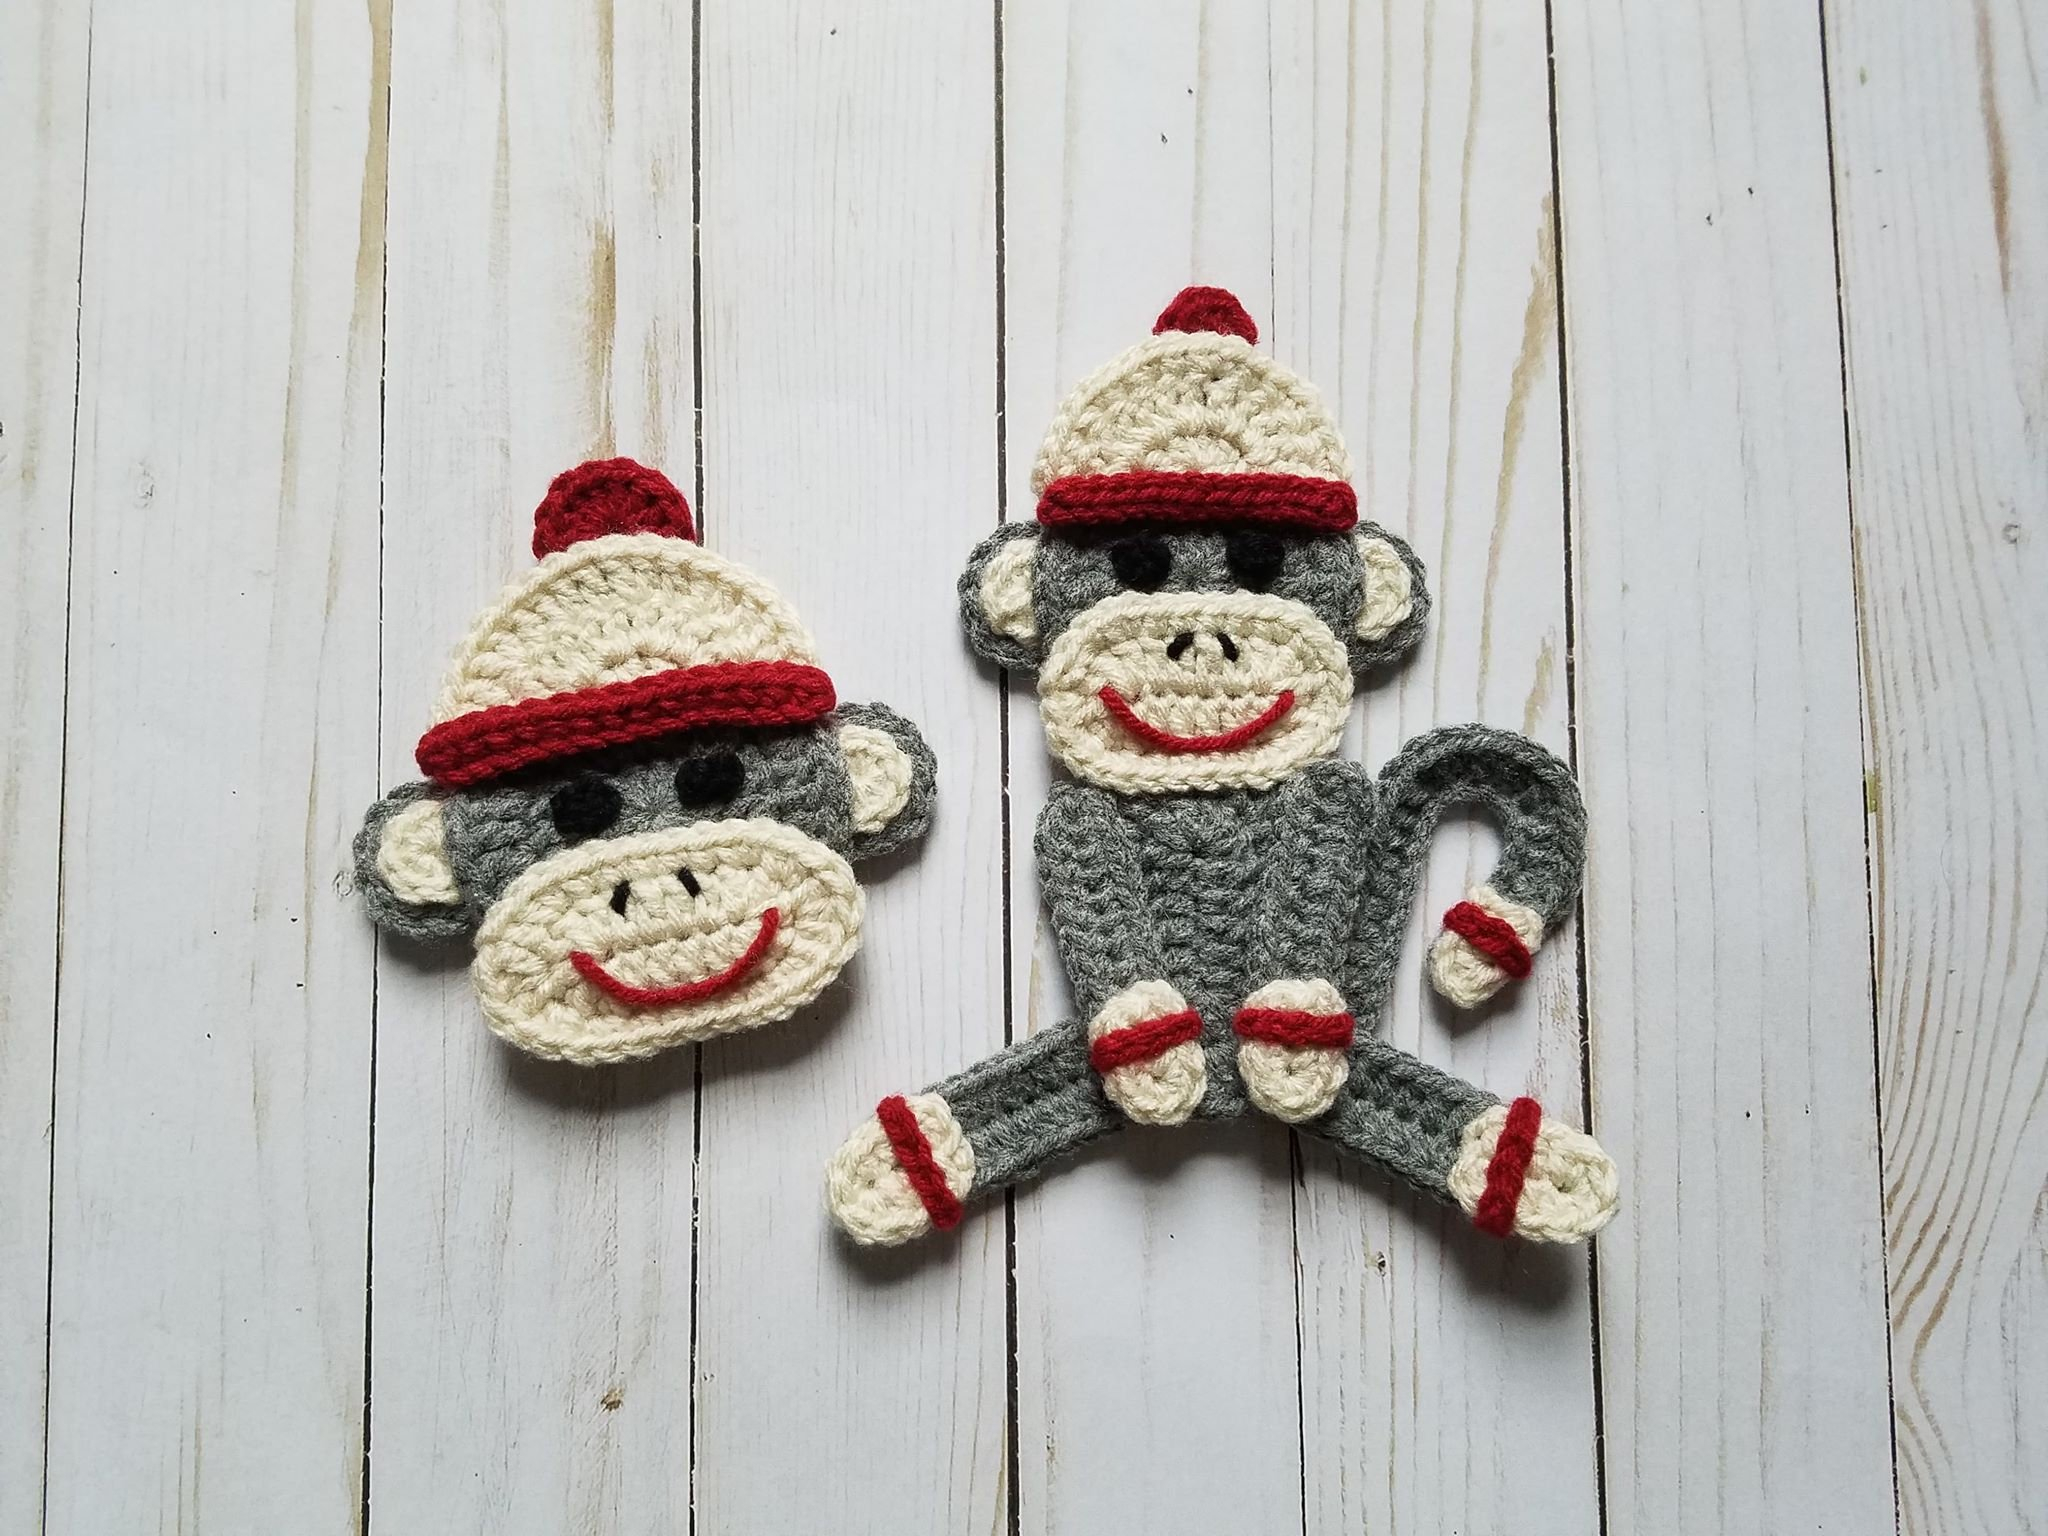 Sock Monkey Crochet Pattern Sock Monkey Applique Pack Crochet Pattern Only Sock Monkey Etsy